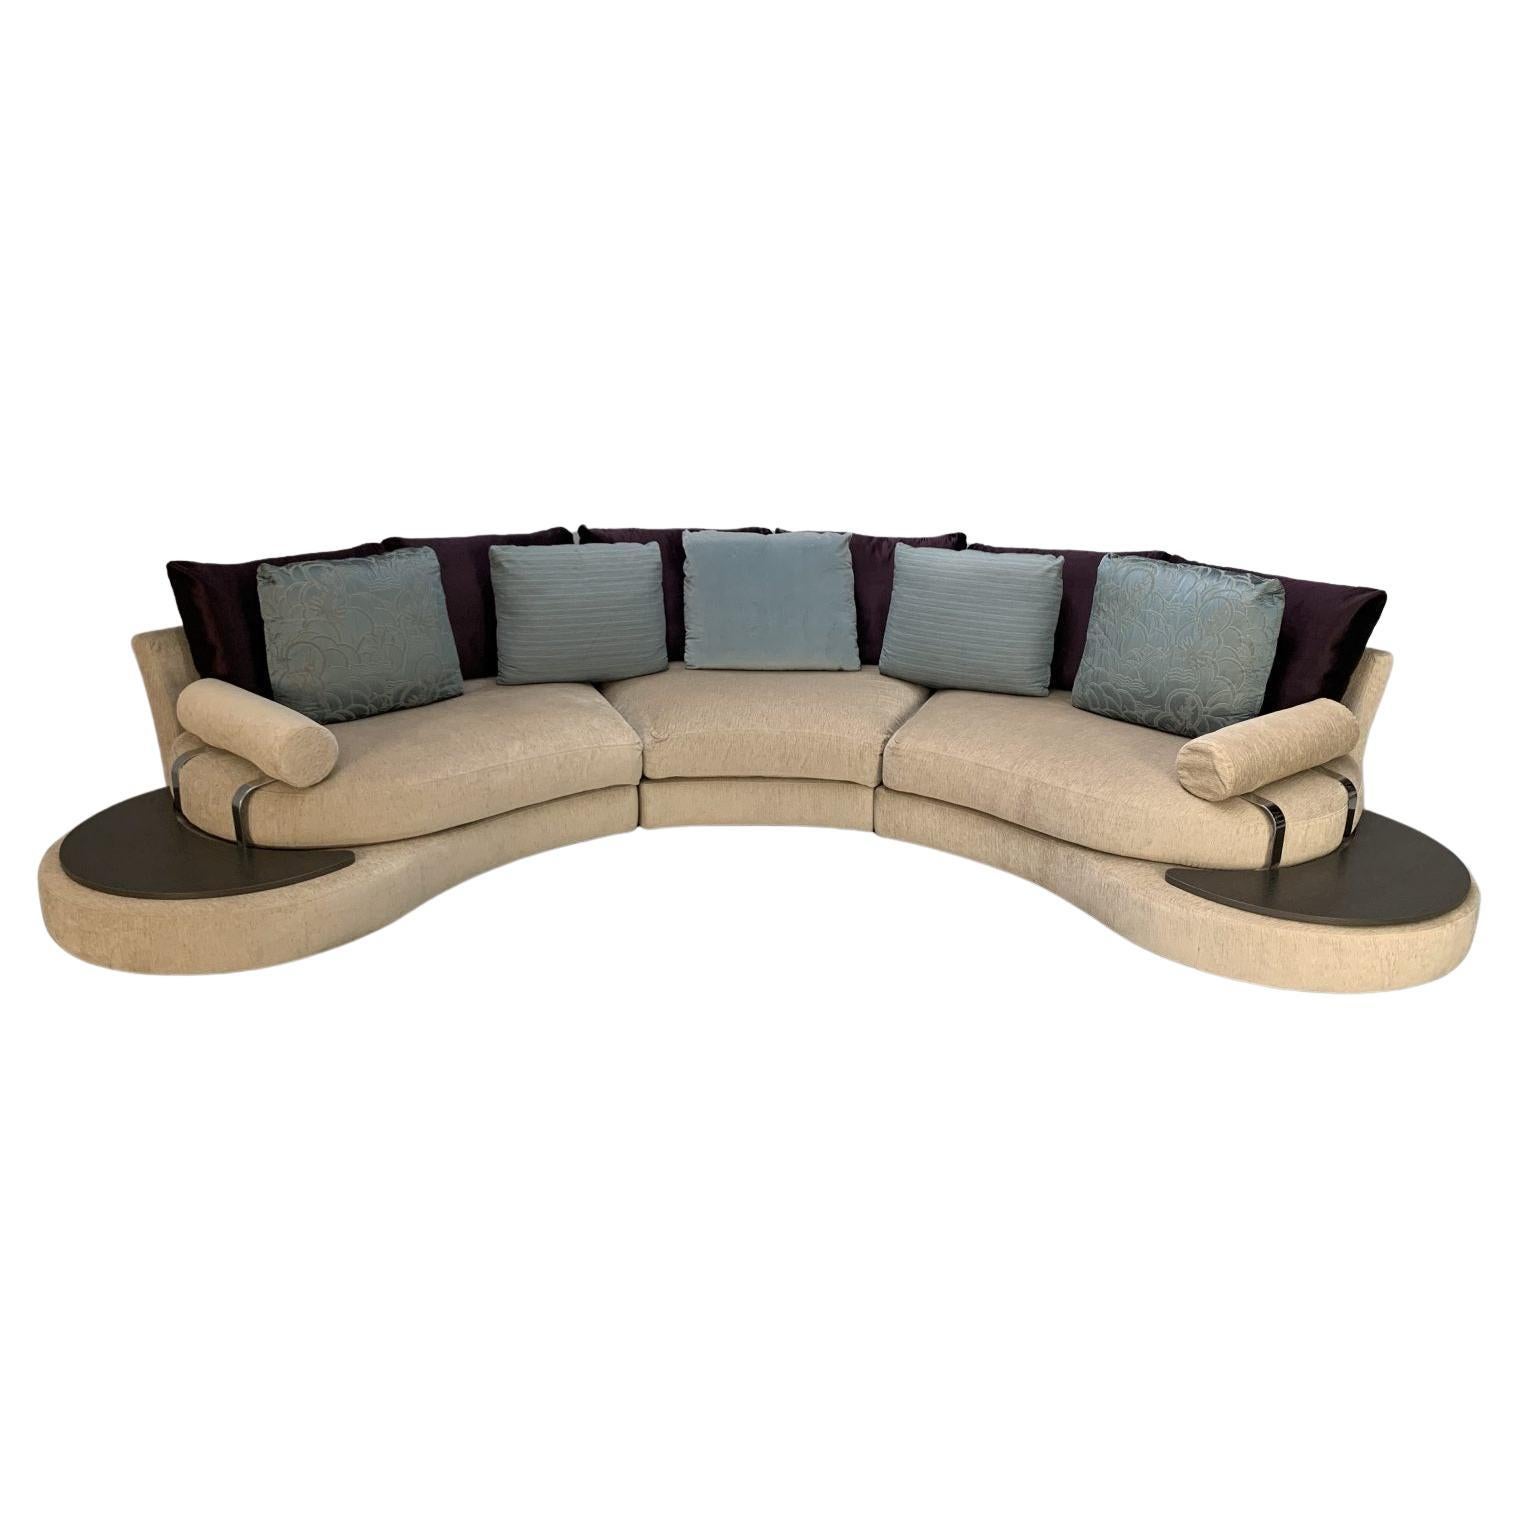 Roche Bobois “Formentera” Sofa, 5-Seat Curved, in Chenille For Sale